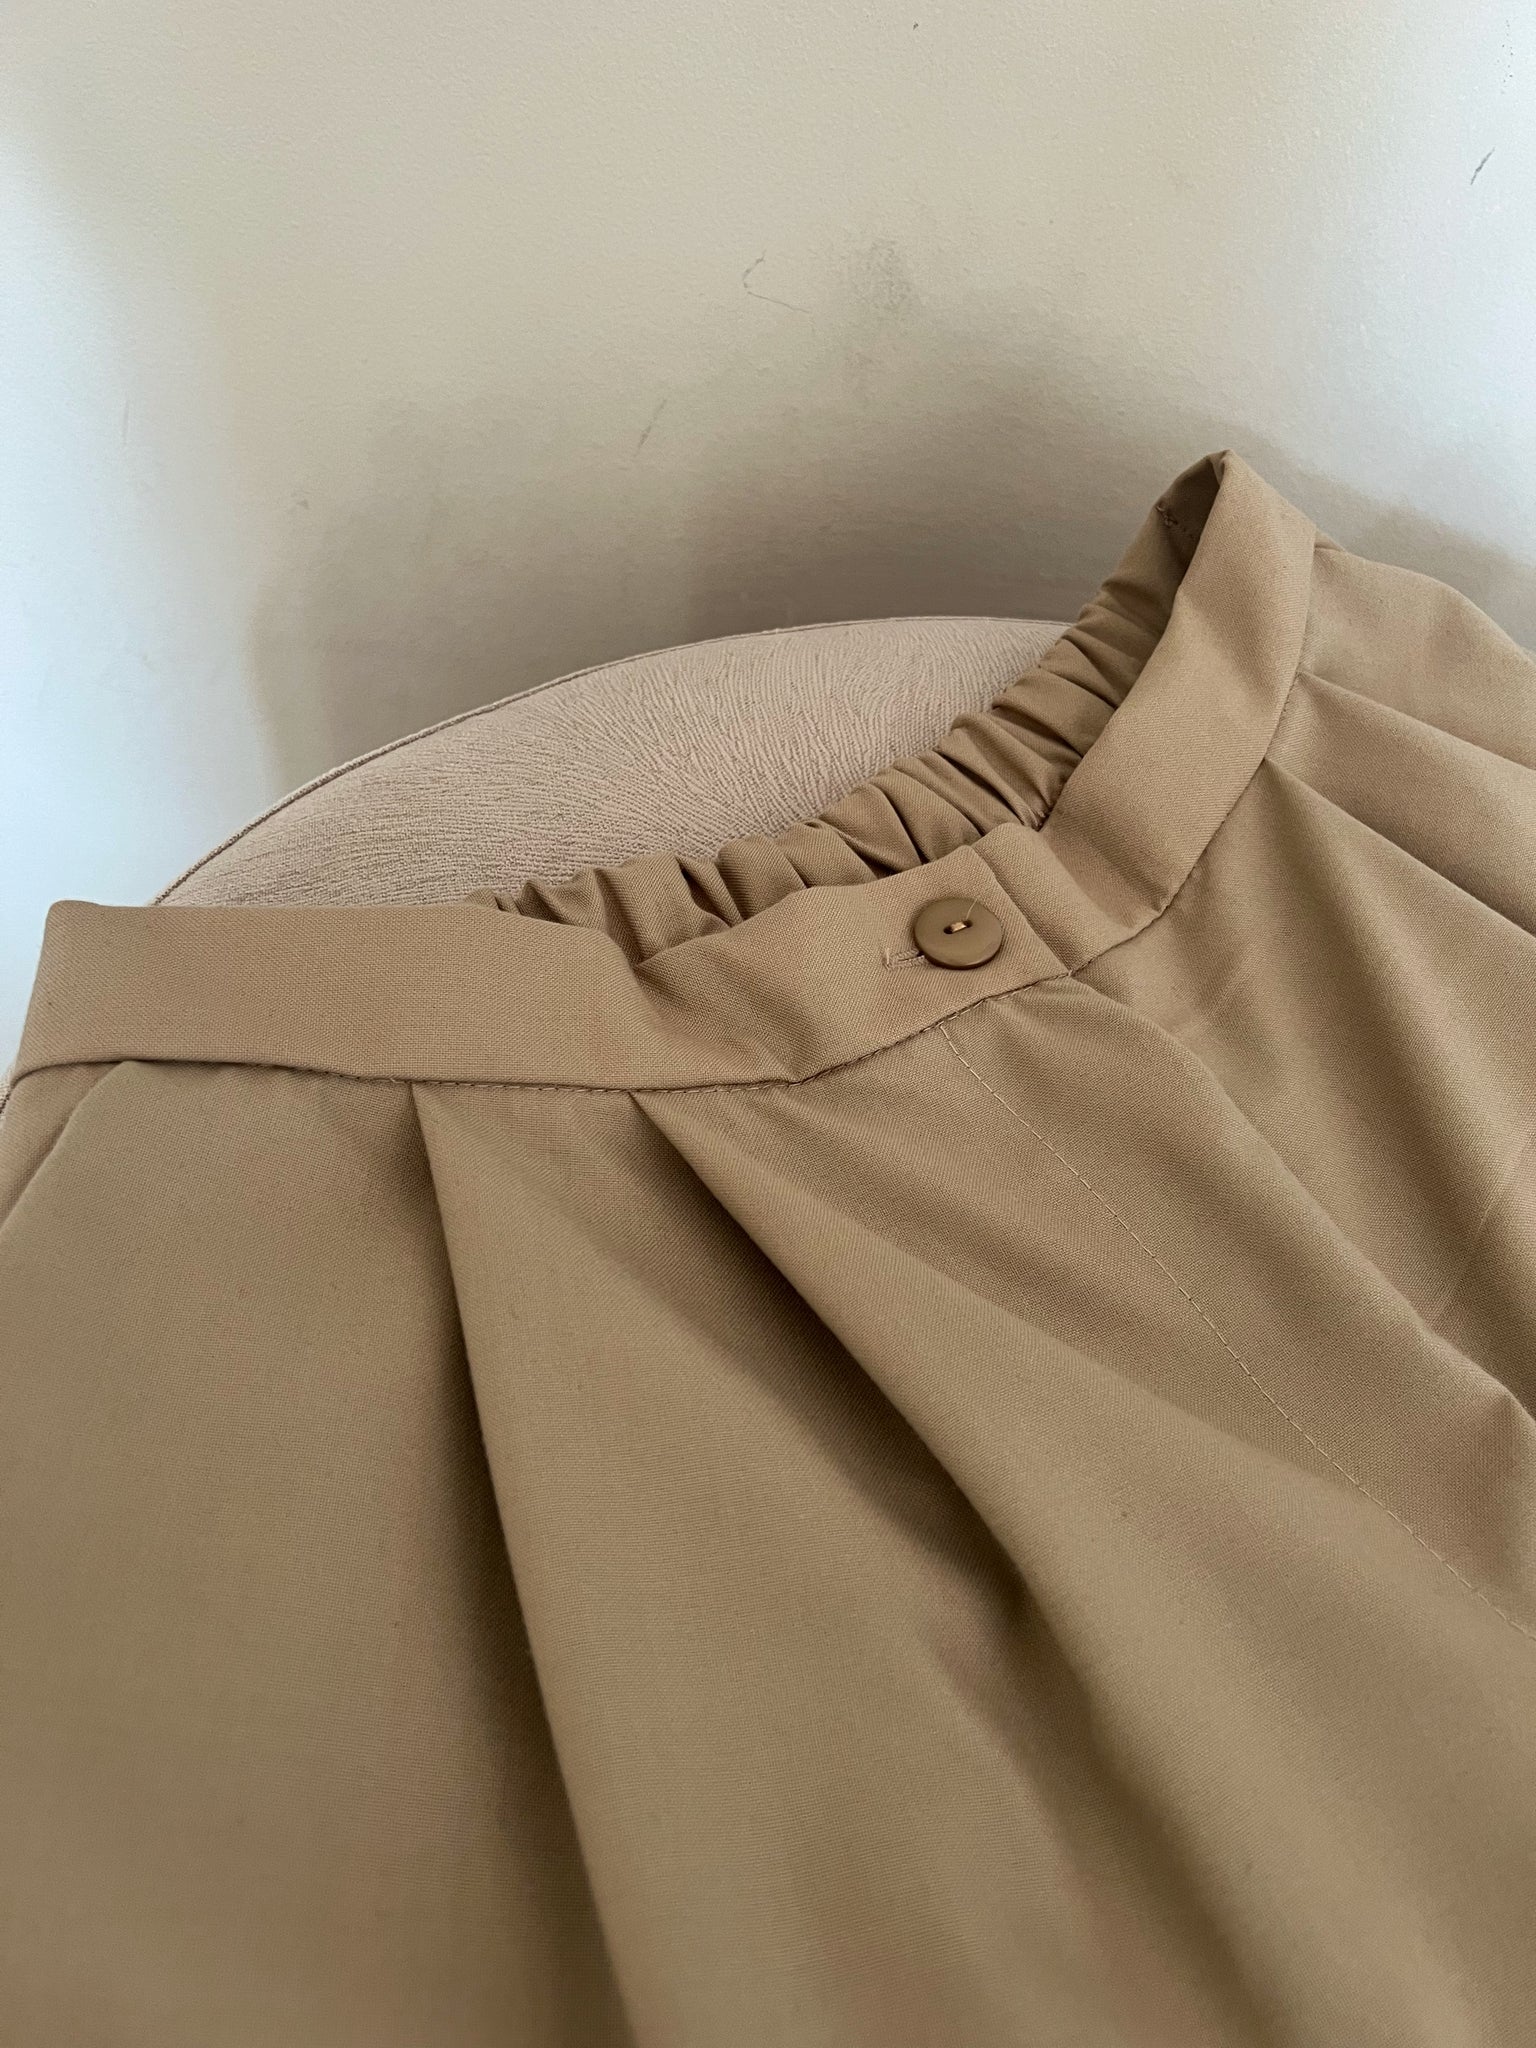 Pantalón Sastre Caqui ( Disponible en S y M ) – Mercill.peru